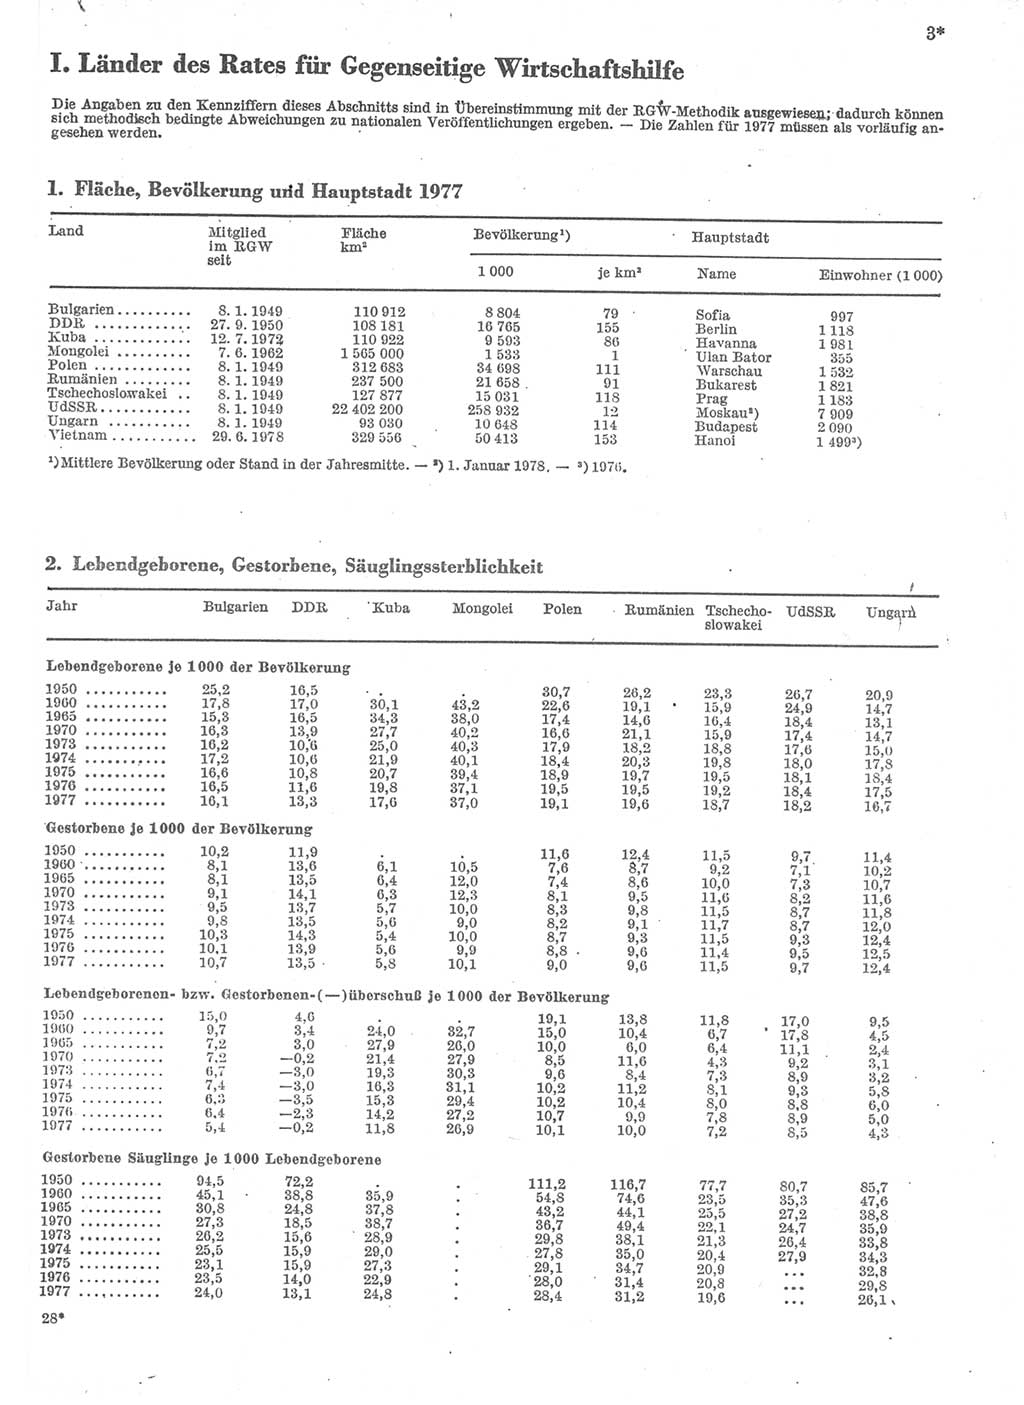 Statistisches Jahrbuch der Deutschen Demokratischen Republik (DDR) 1979, Seite 3 (Stat. Jb. DDR 1979, S. 3)